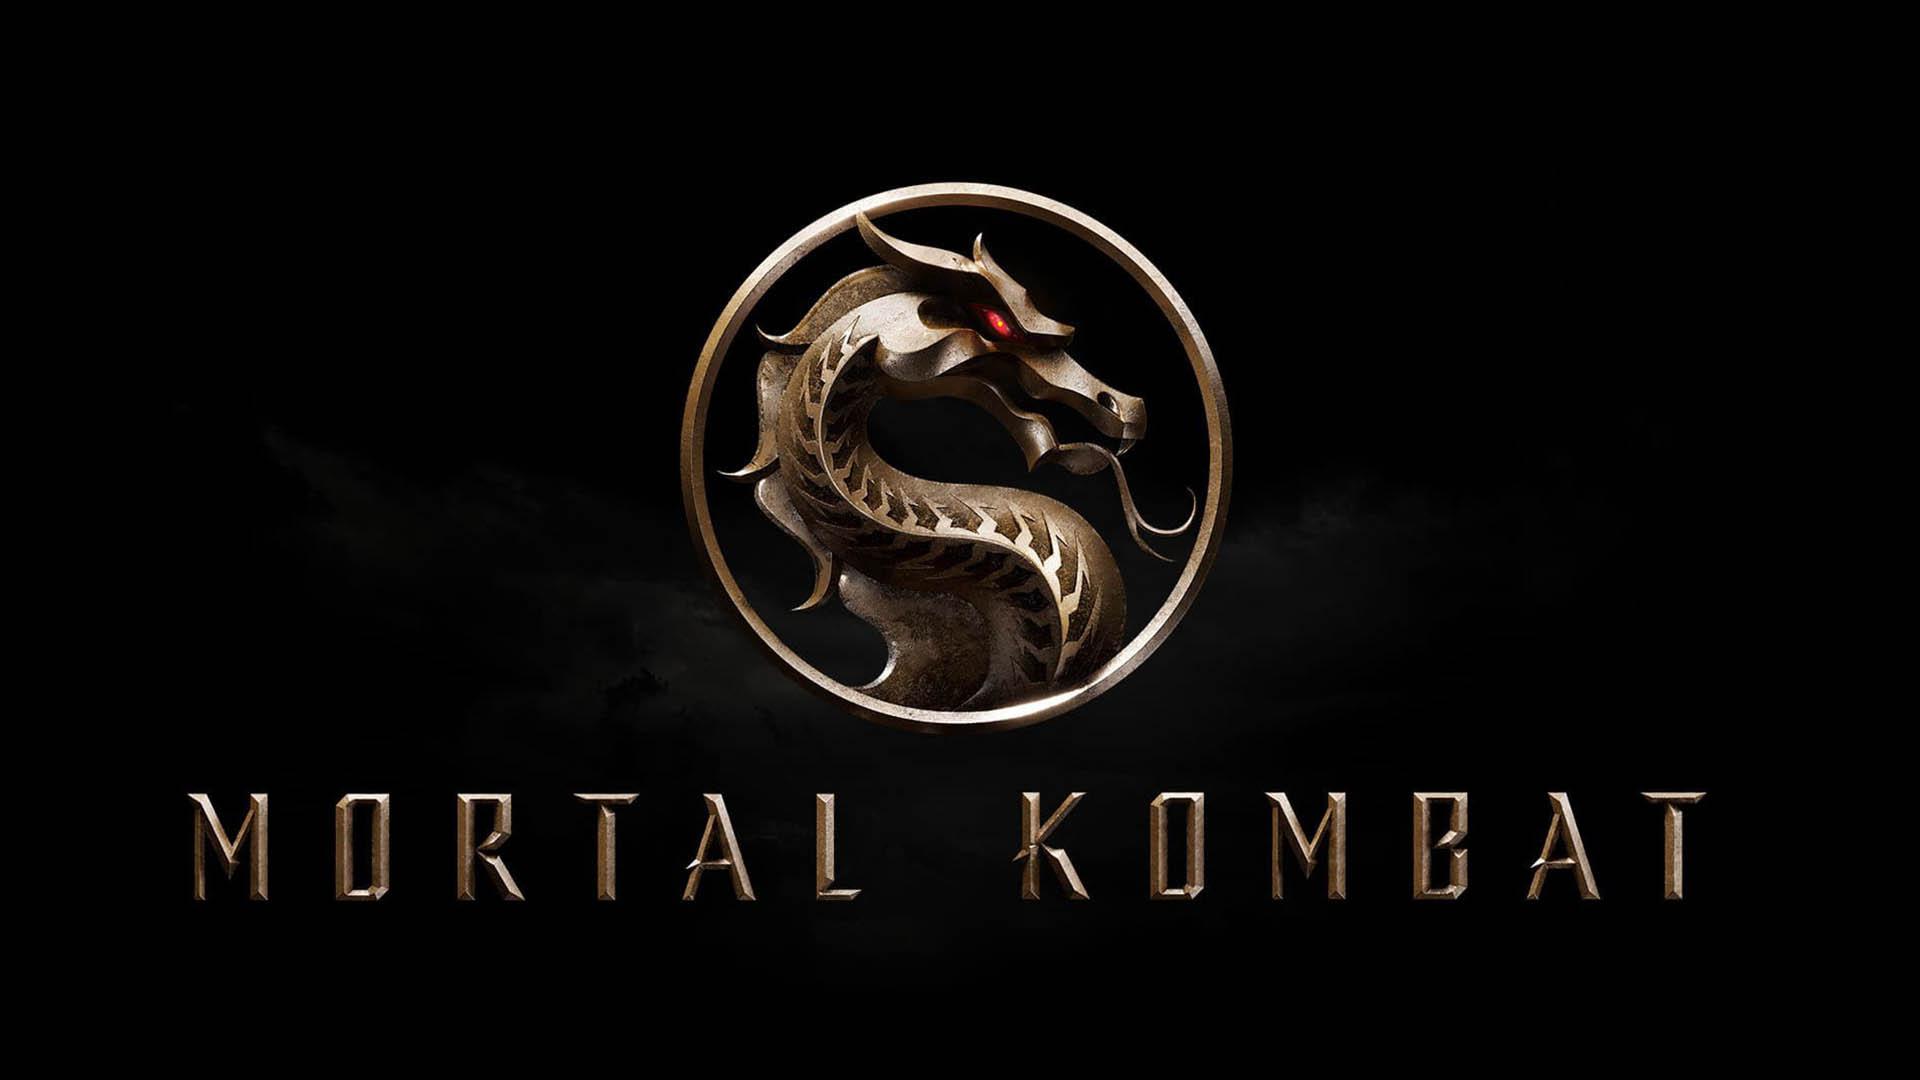 واکنش منتقدان به فیلم Mortal Kombat - مورتال کامبت